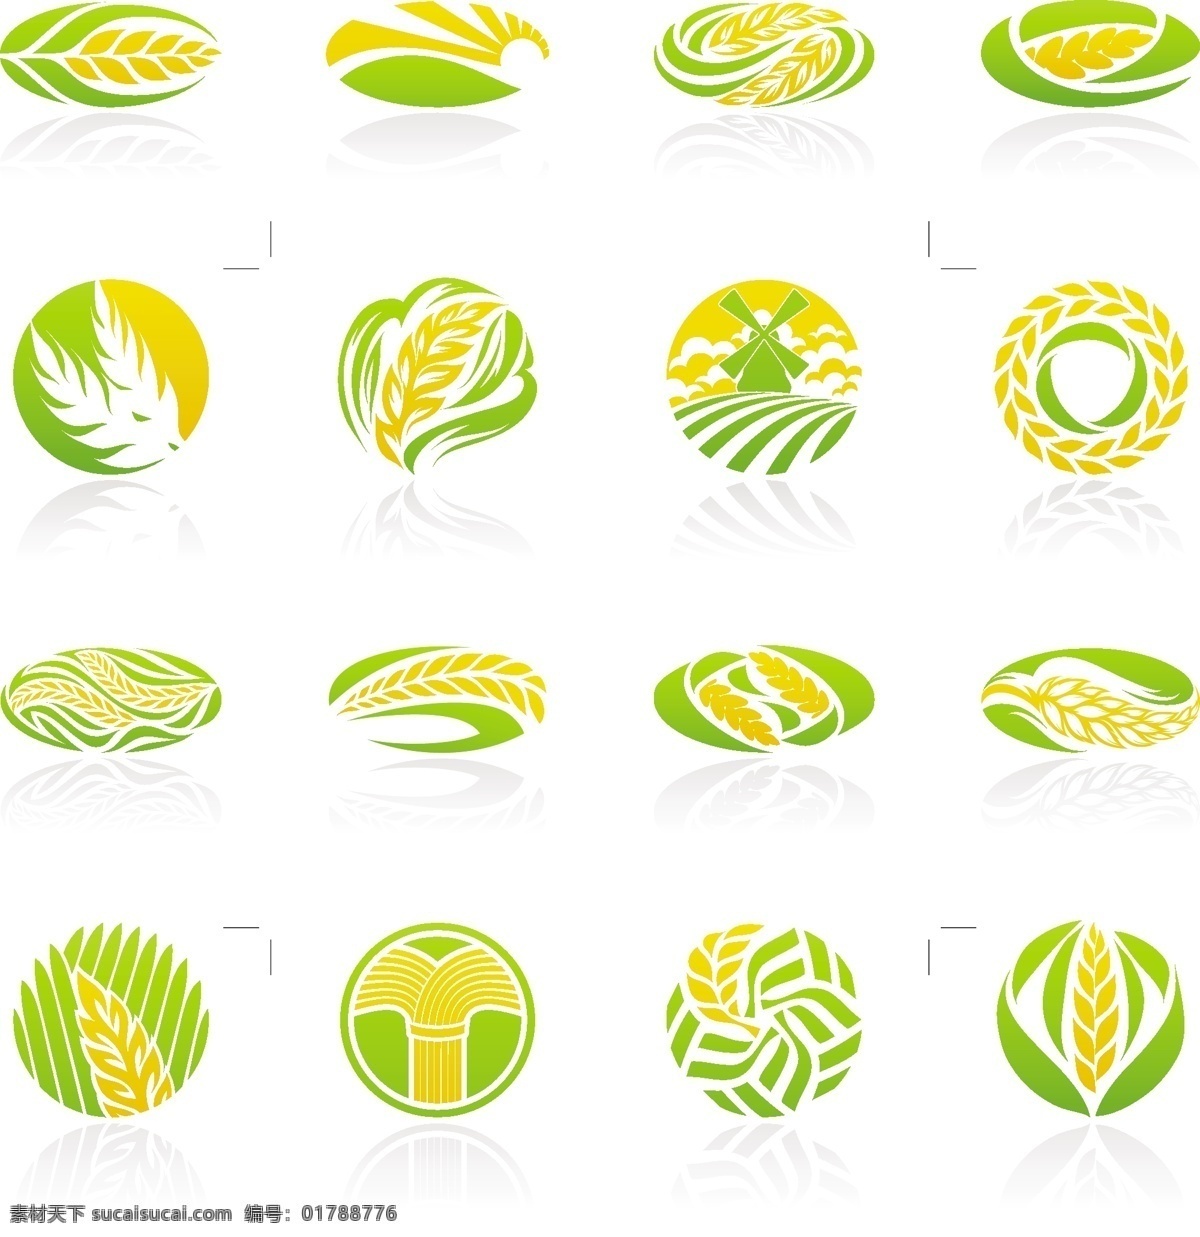 缤纷 色彩 logo 创意设计 矢量 标识 标志 抽象 创意logo 创意标志 稻穗 概念 环保 矢量素材 矢量图 设计素材 叶子 绿叶 麦穗 小鸟 生态 其他矢量图